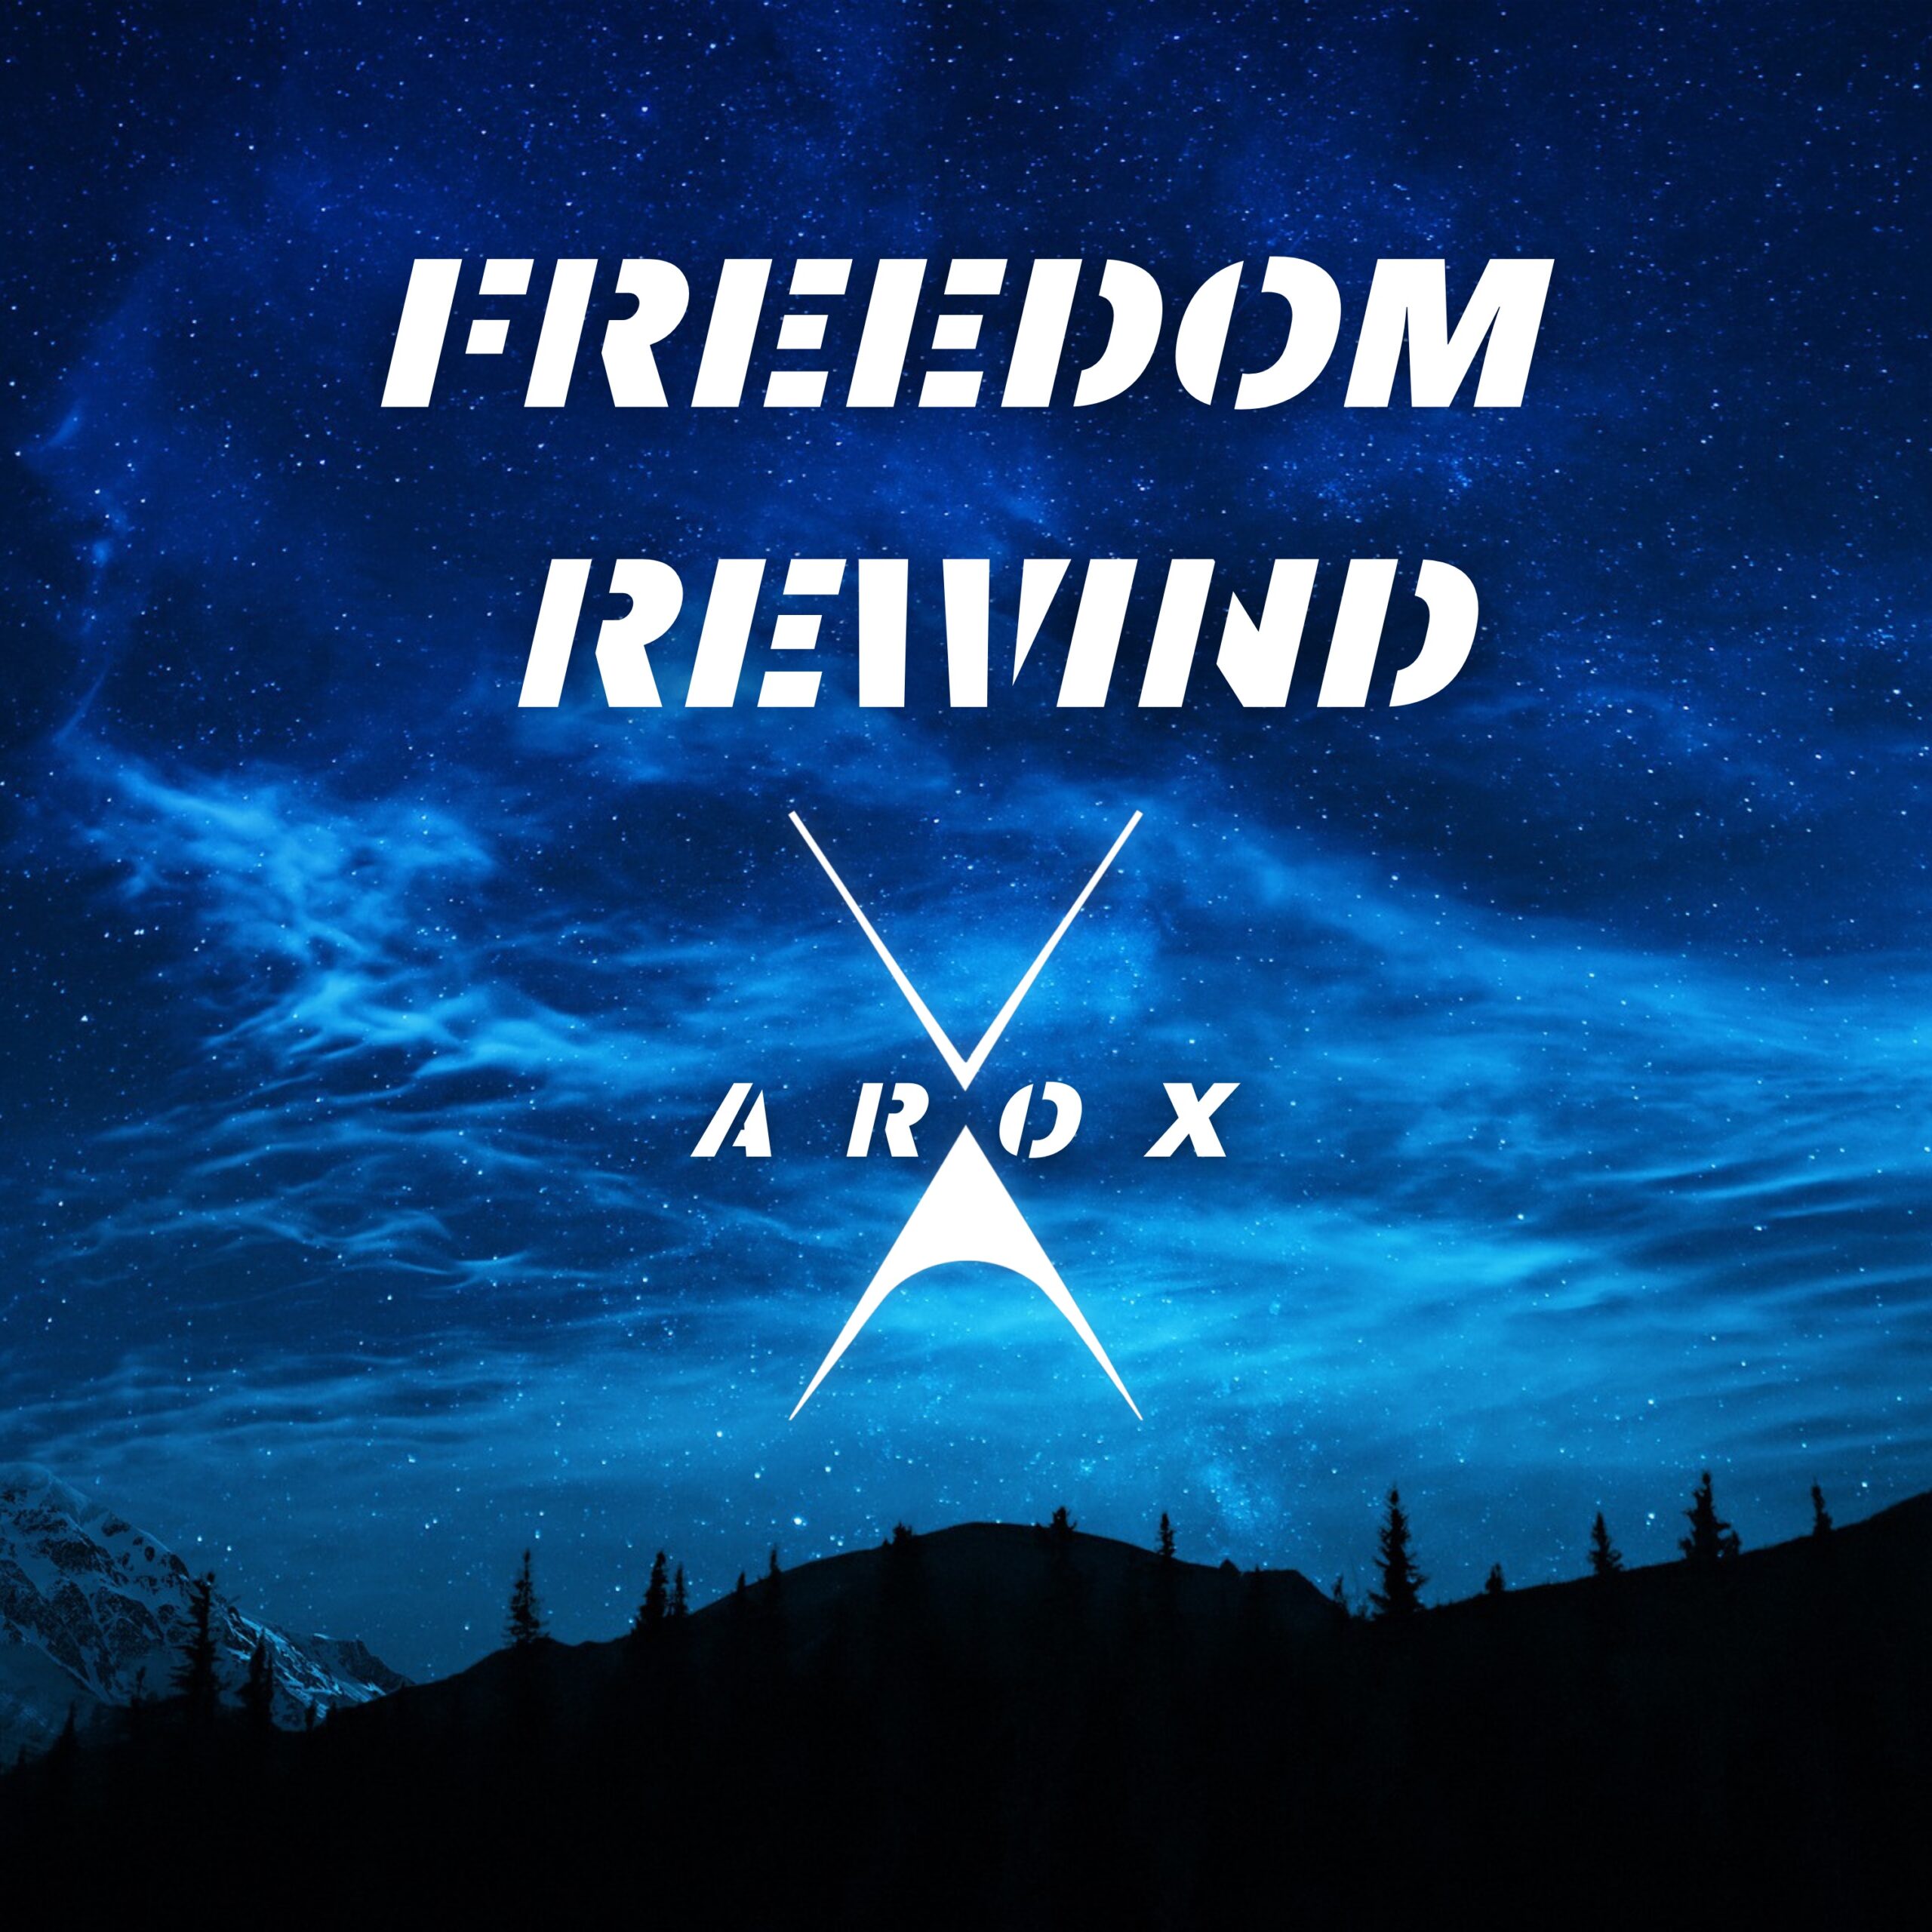 Arox pubblica il nuovo singolo “Freedom Rewind”